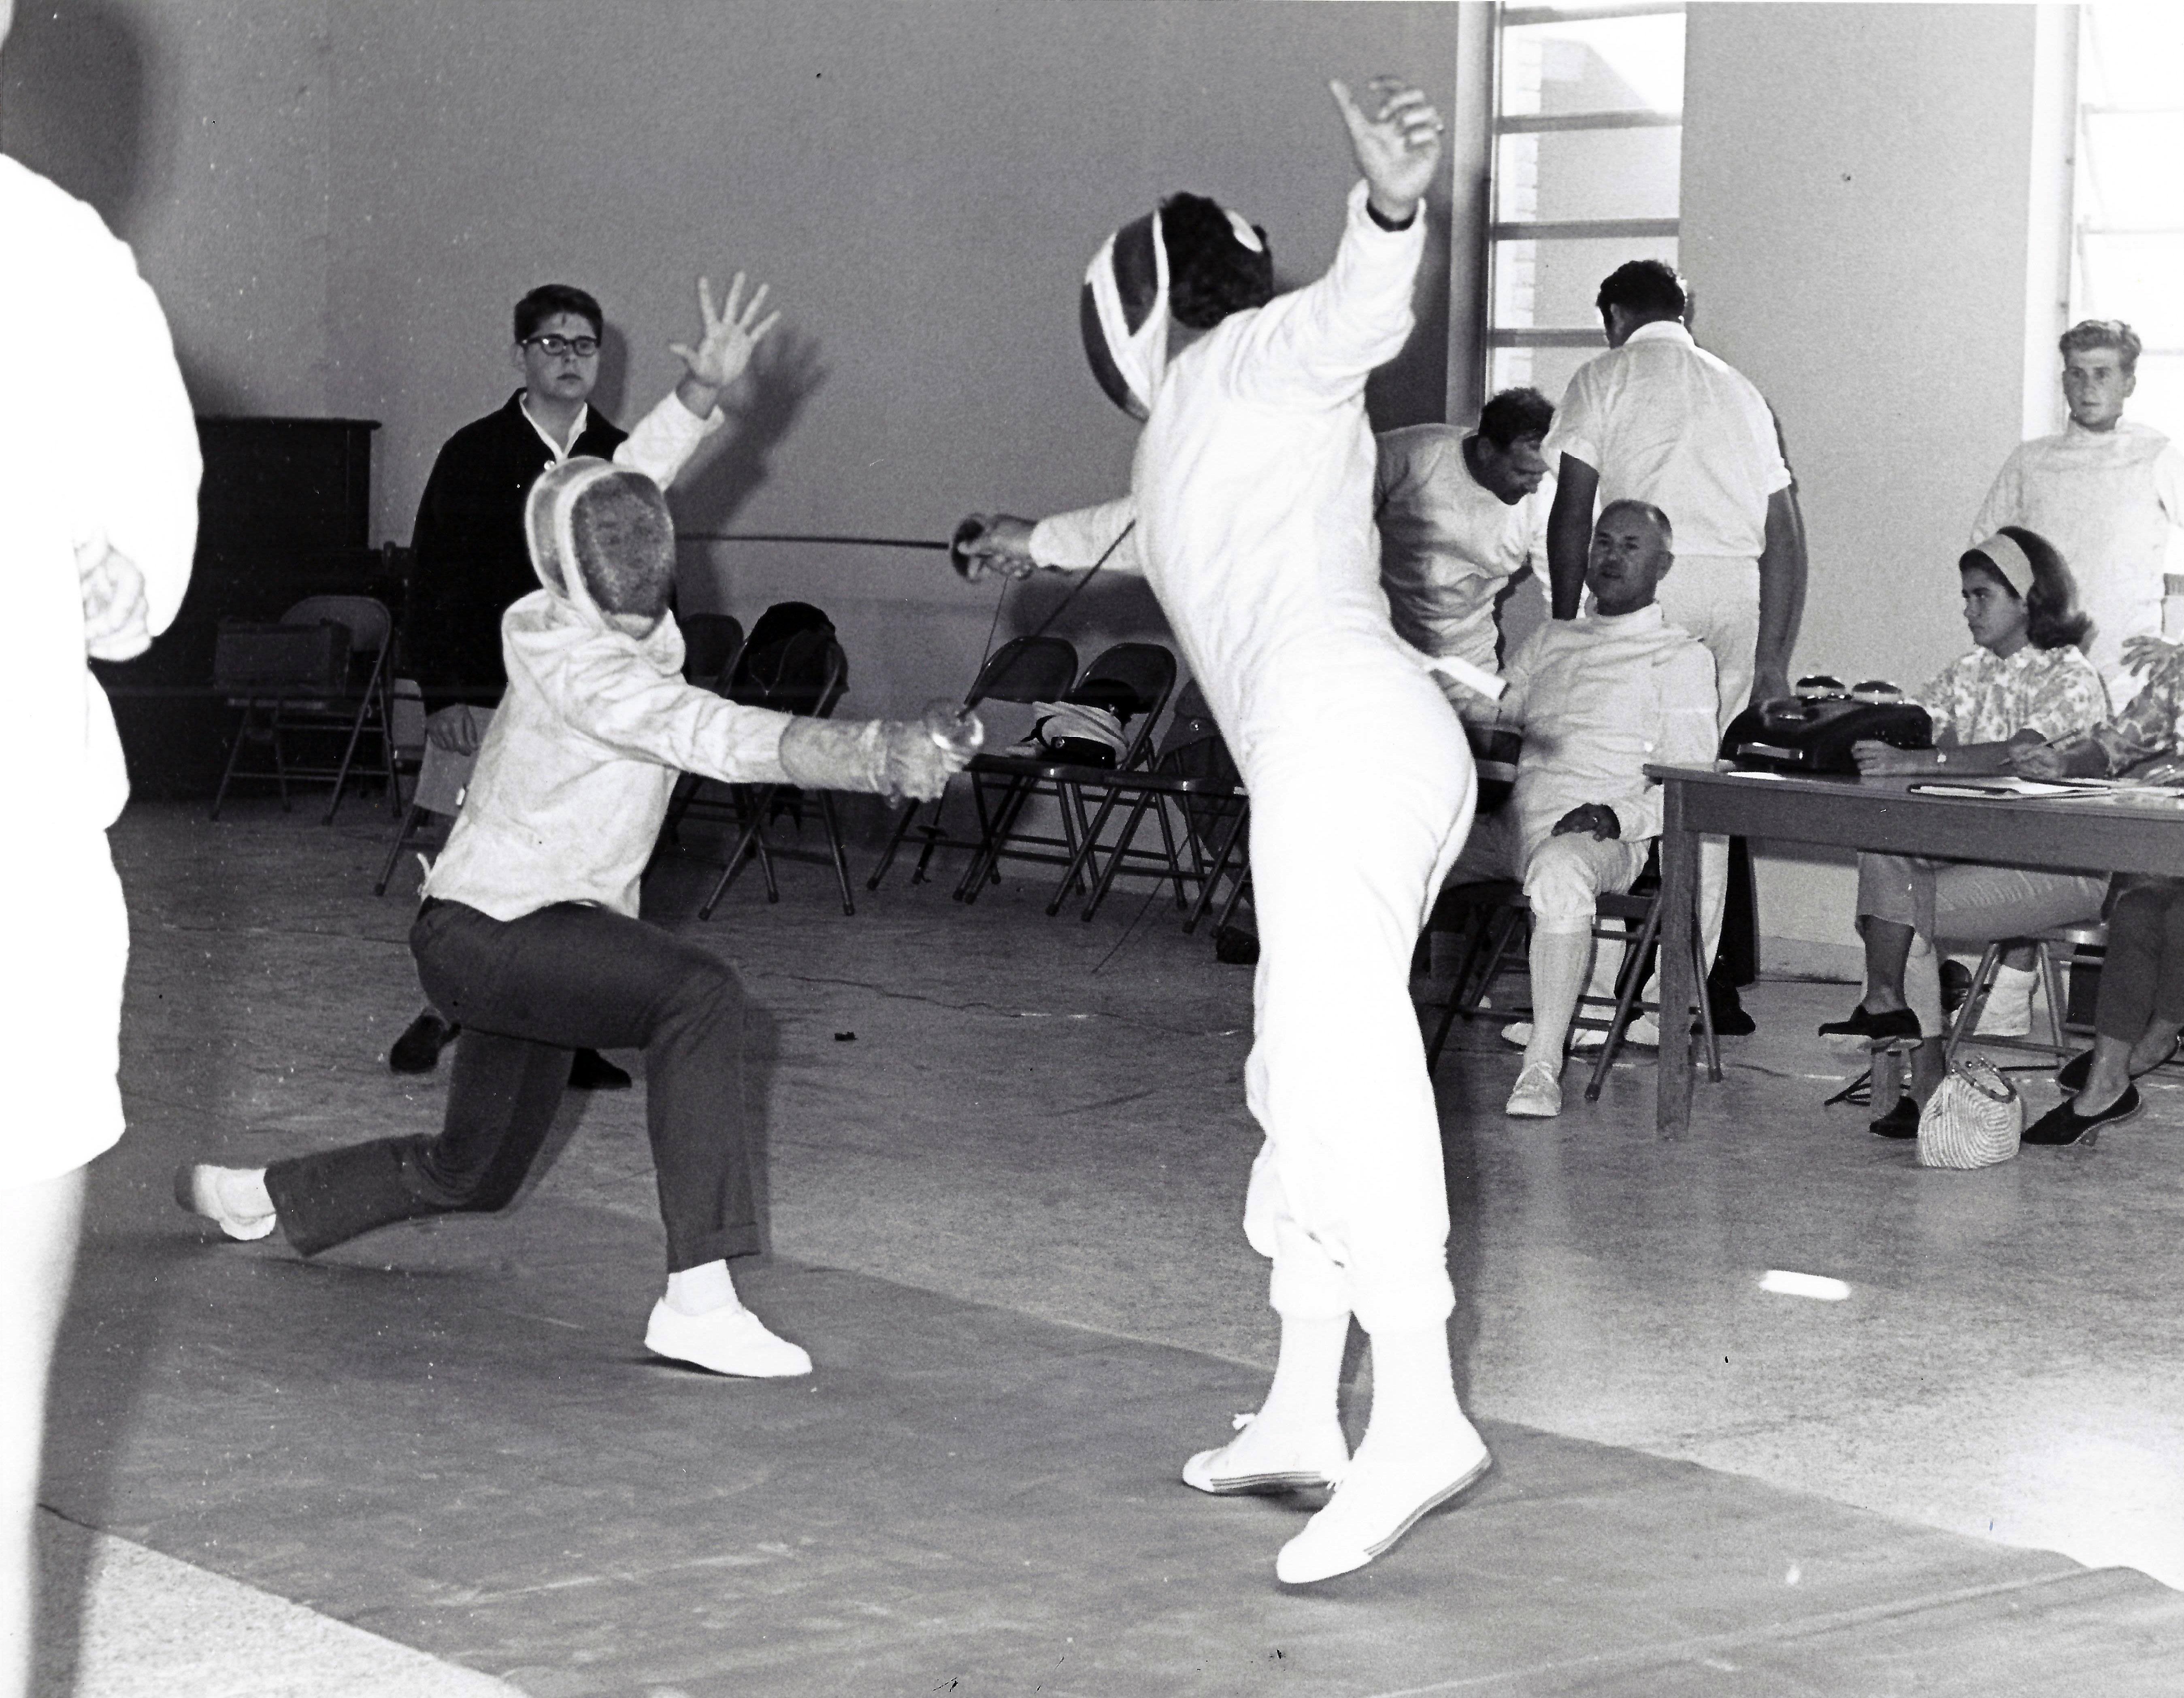 Fencing club, 1960's